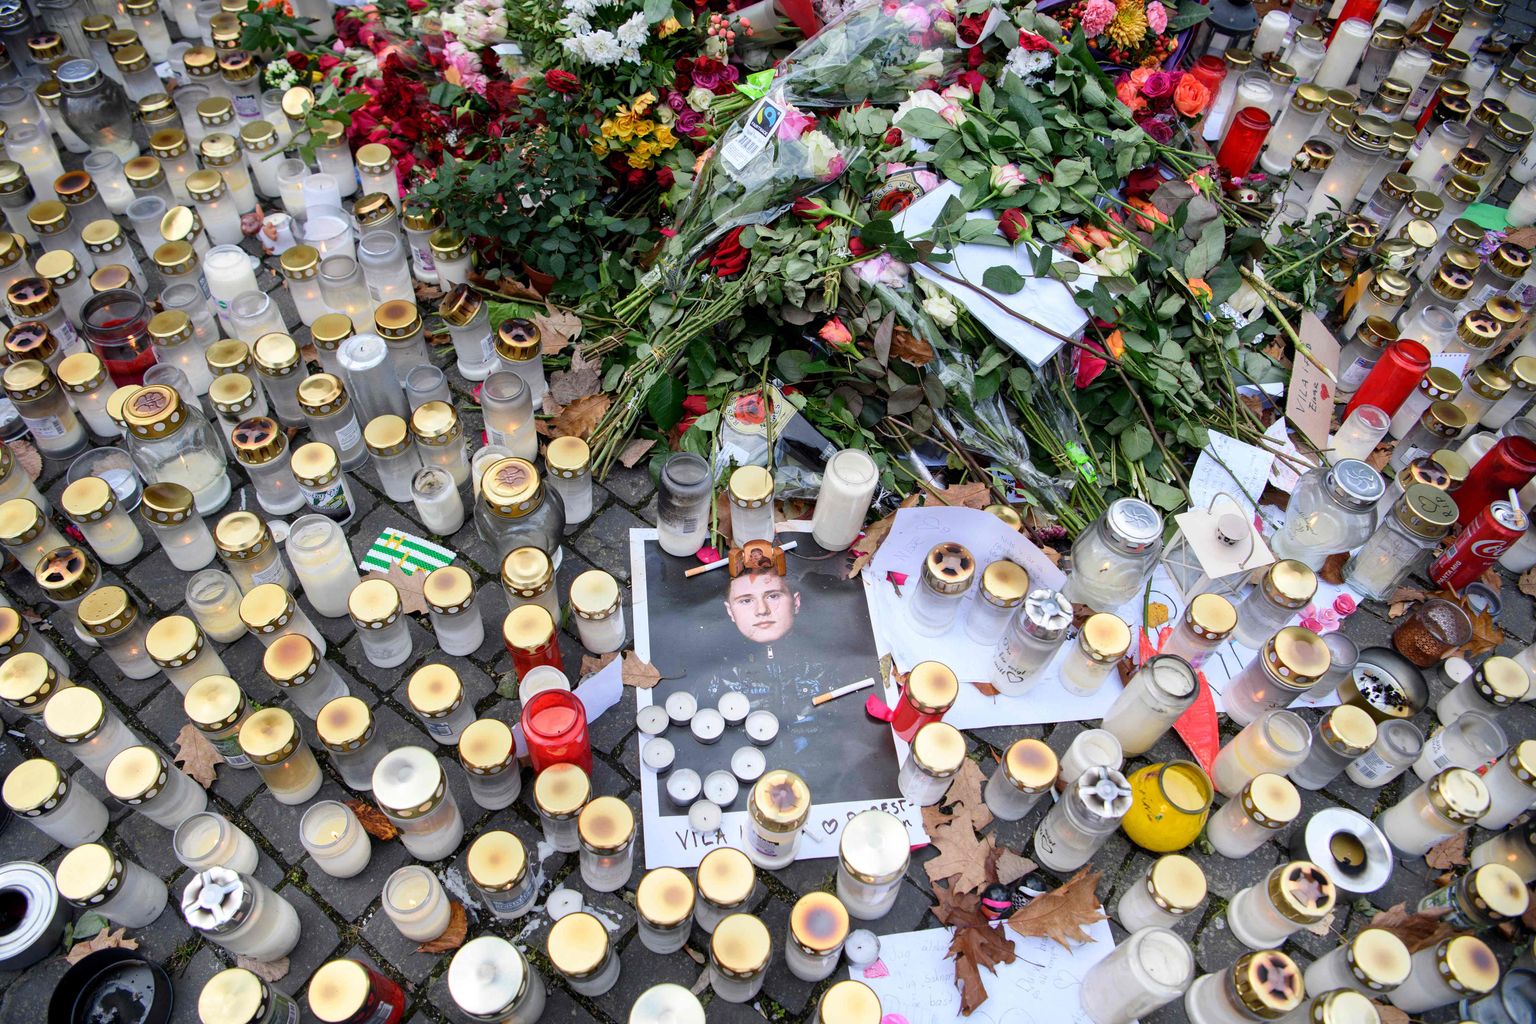 Rootsis Stockholmis Hammarby Sjöstadis lasti 21. oktoobril maha räppar Einar. Rootsi kultuuriminister Jeanette Gustafsdotter andis käsu uurida, kas gängstaräpi ja kuritegevuse vahel on seos. Pildil on inimeste toodud küünlad ja lilled paigas, kus Einar elu kaotas